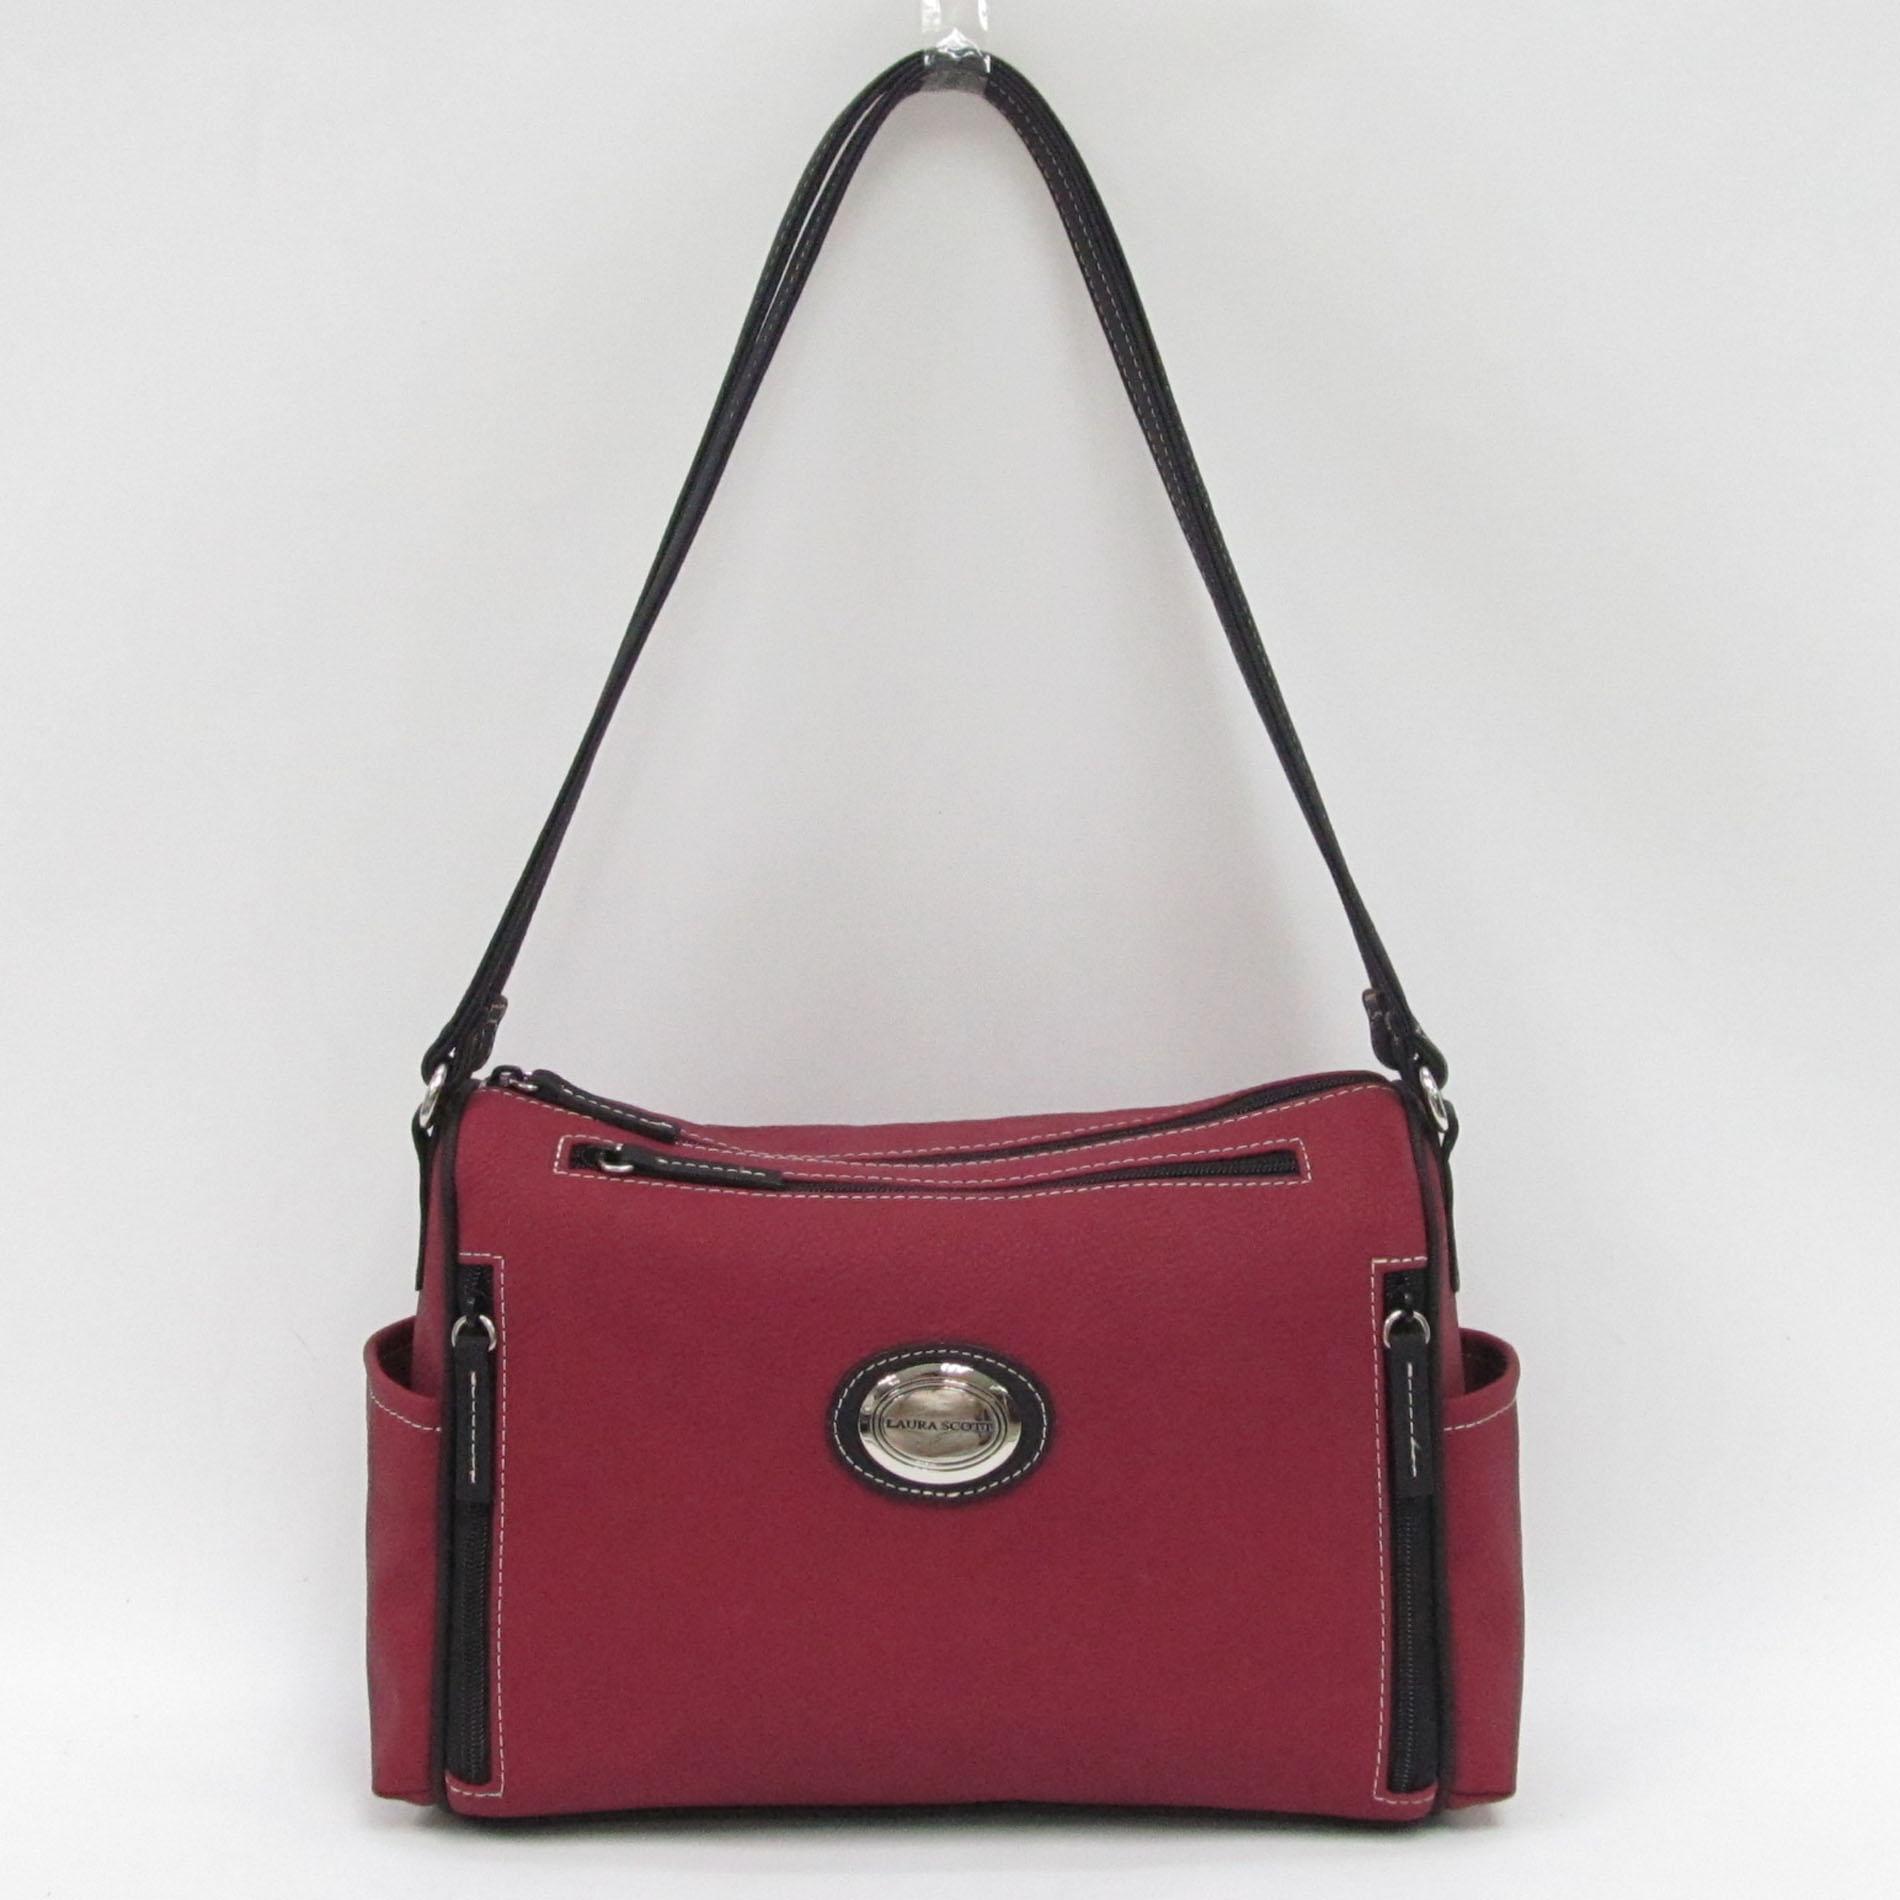 Laura Scott Women's Sara Hunter Shoulder Handbag